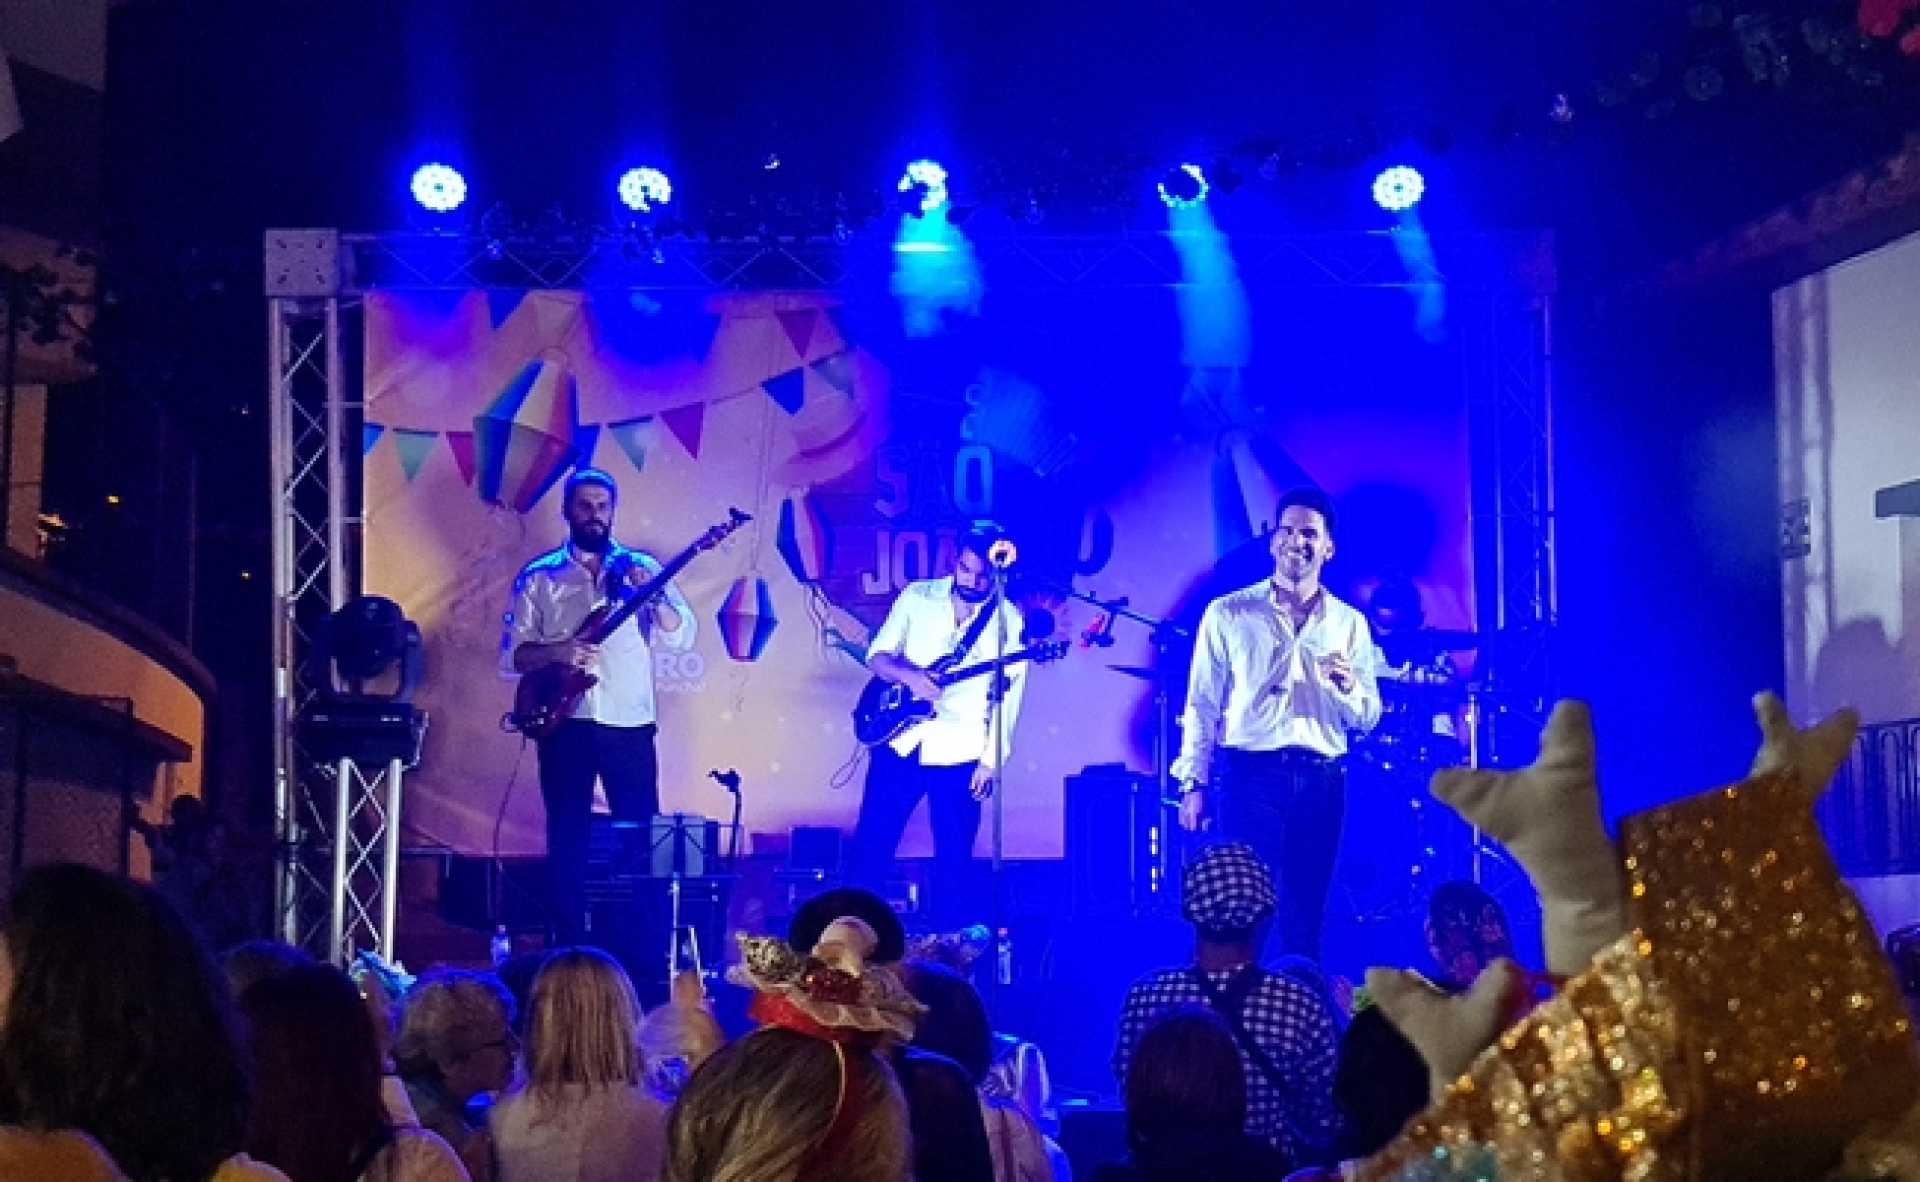 Miro Freitas canta "Amigo" na Festa de São João. Veja o momento